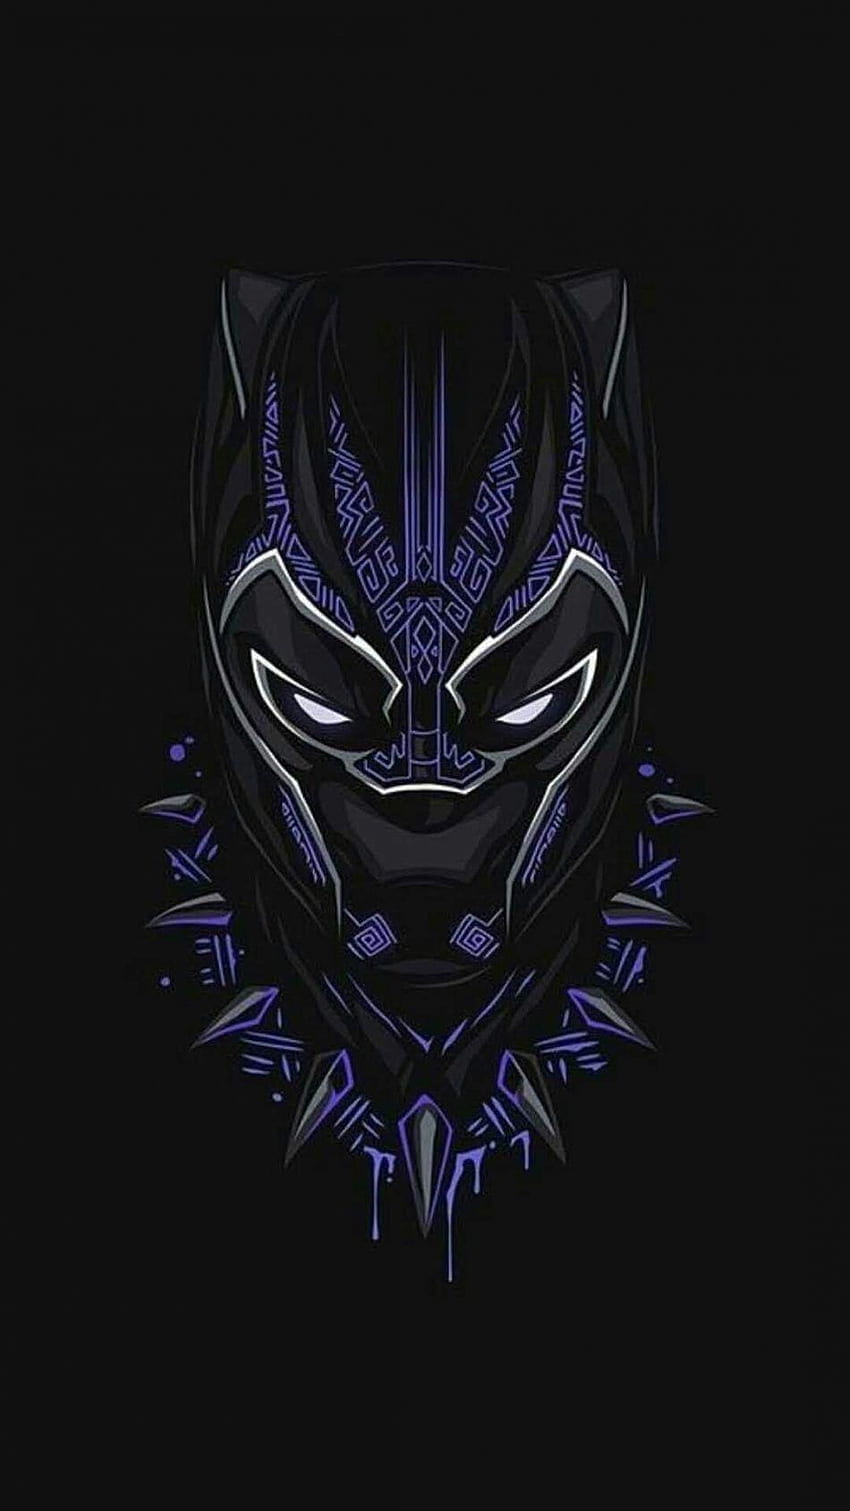 En honor al rey. RIP en 2020. Black panther marvel, Black panther , Black panther superhero fondo de pantalla del teléfono